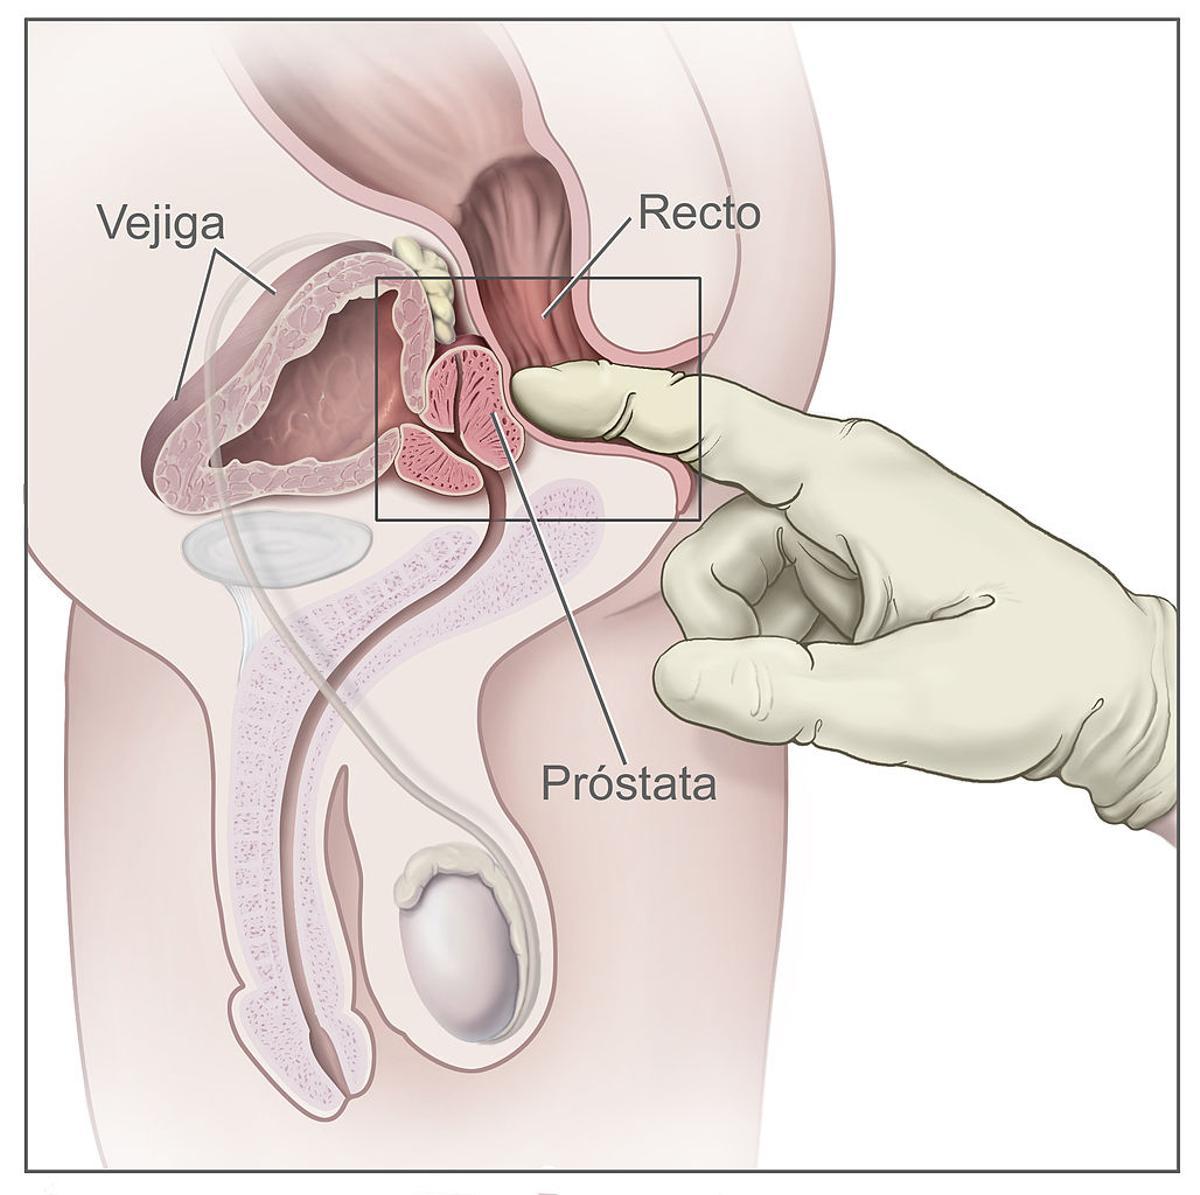 Ilustración médica para entender el tacto rectal como proueba para detectar el cáncer de próstata